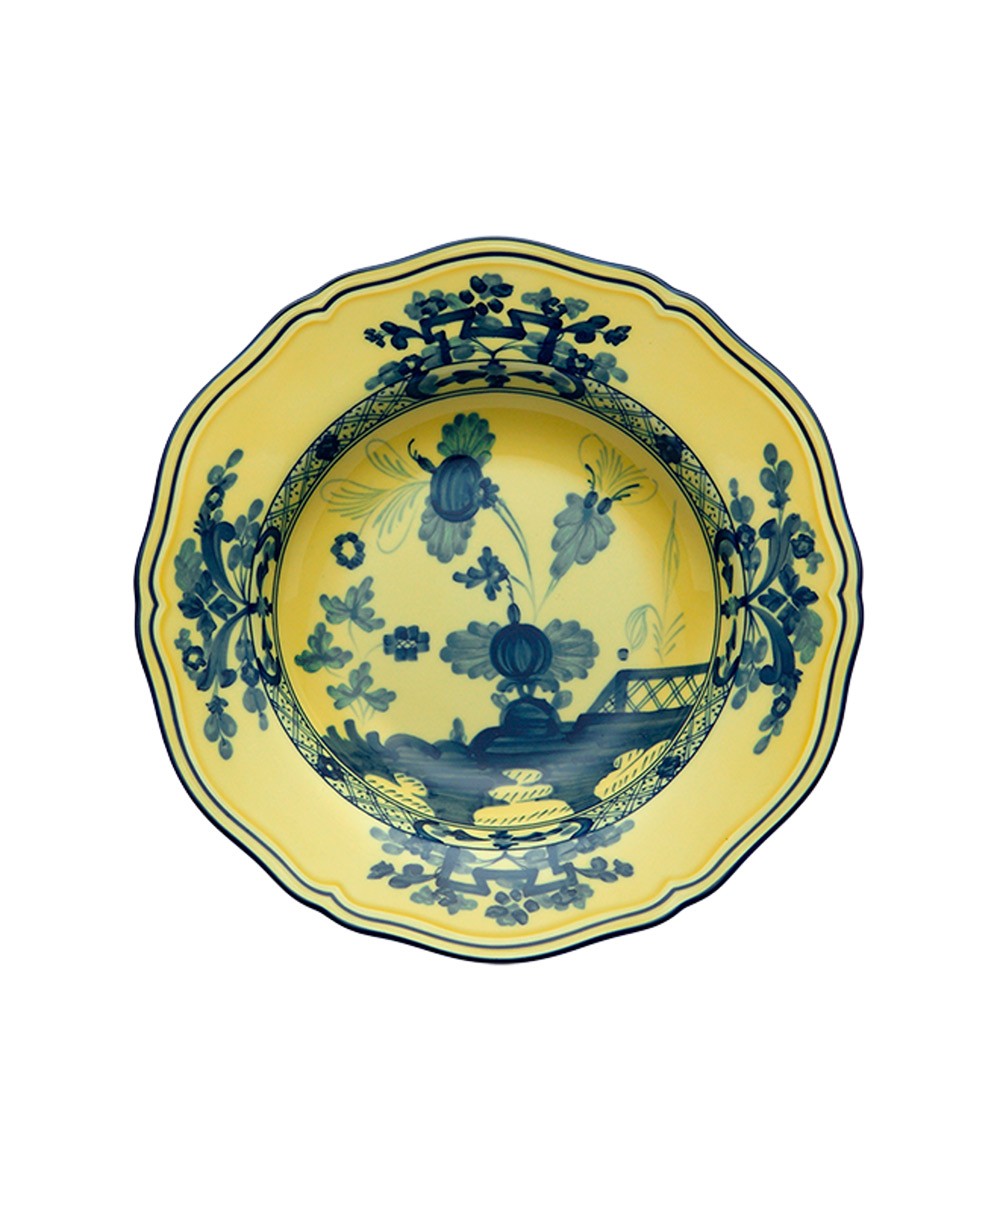 Produktbild der "Oriente Citrino Suppenteller" von Ginori 1735 im RAUM Concept store